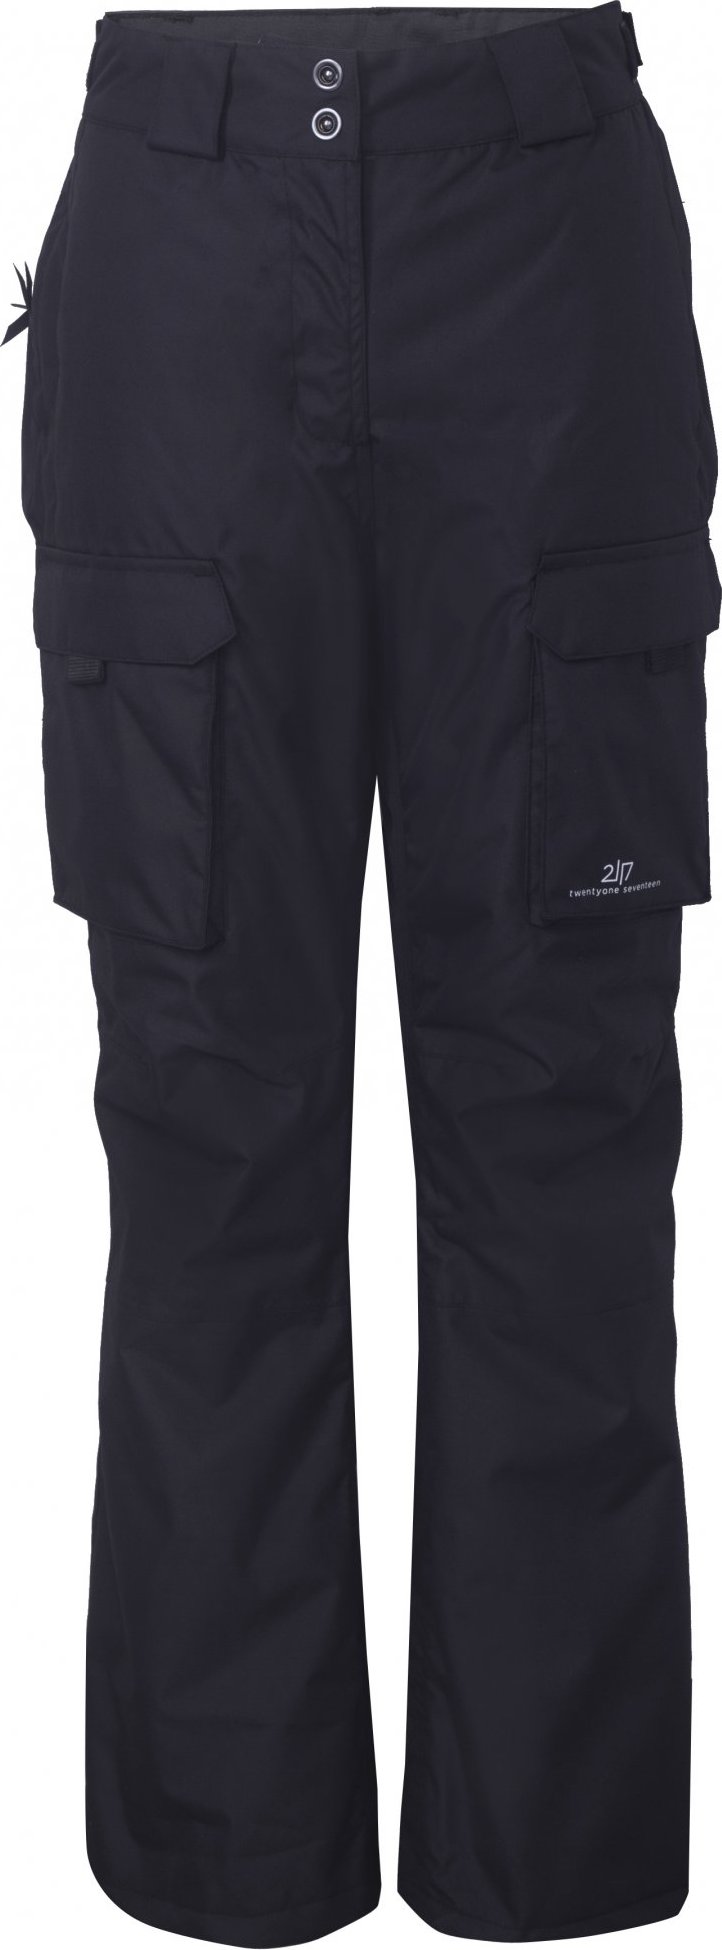 Dámské lyžařské kalhoty 2117 Tybble Eco černá Velikost: L